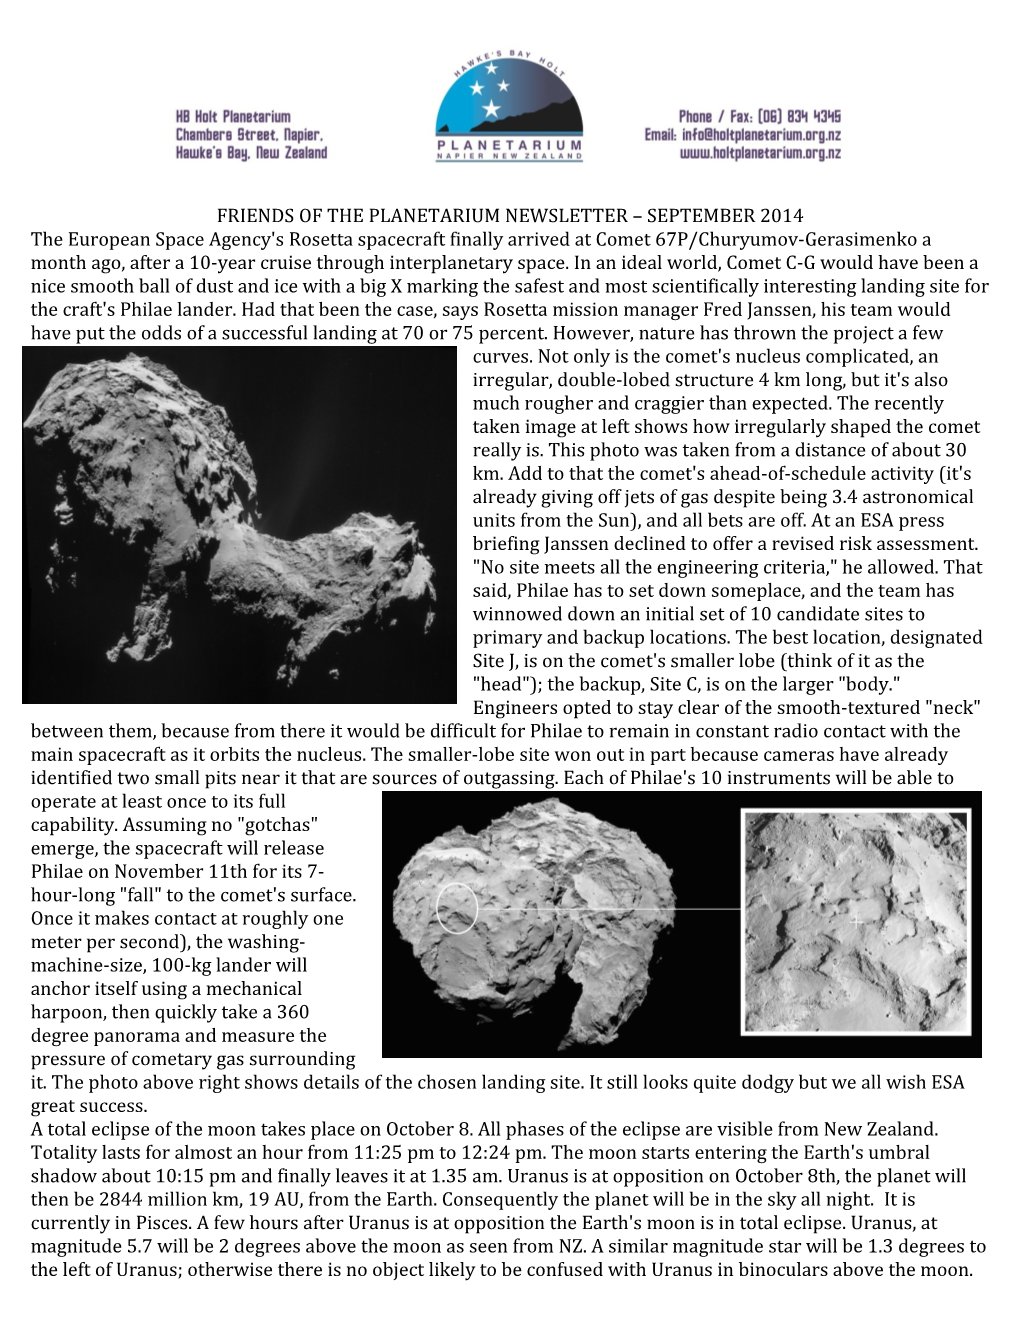 Friends of the Planetarium Newsletter September 2014